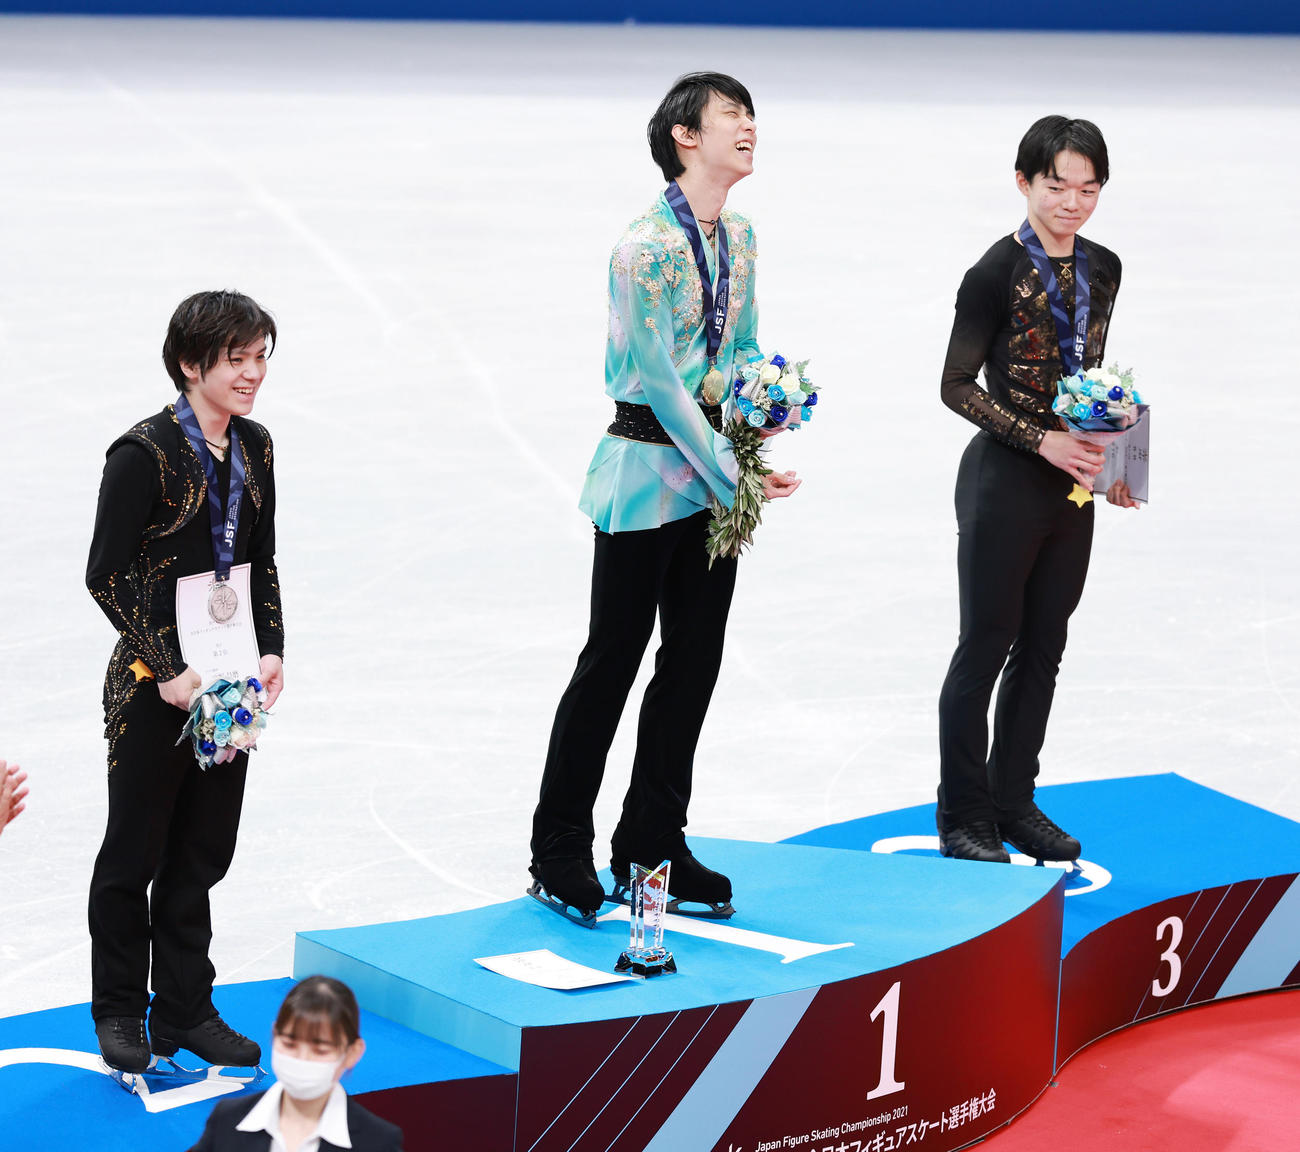 優勝した羽生は表彰台で笑顔を見せる。左は2位の宇野、右は3位の鍵山（撮影・垰建太）